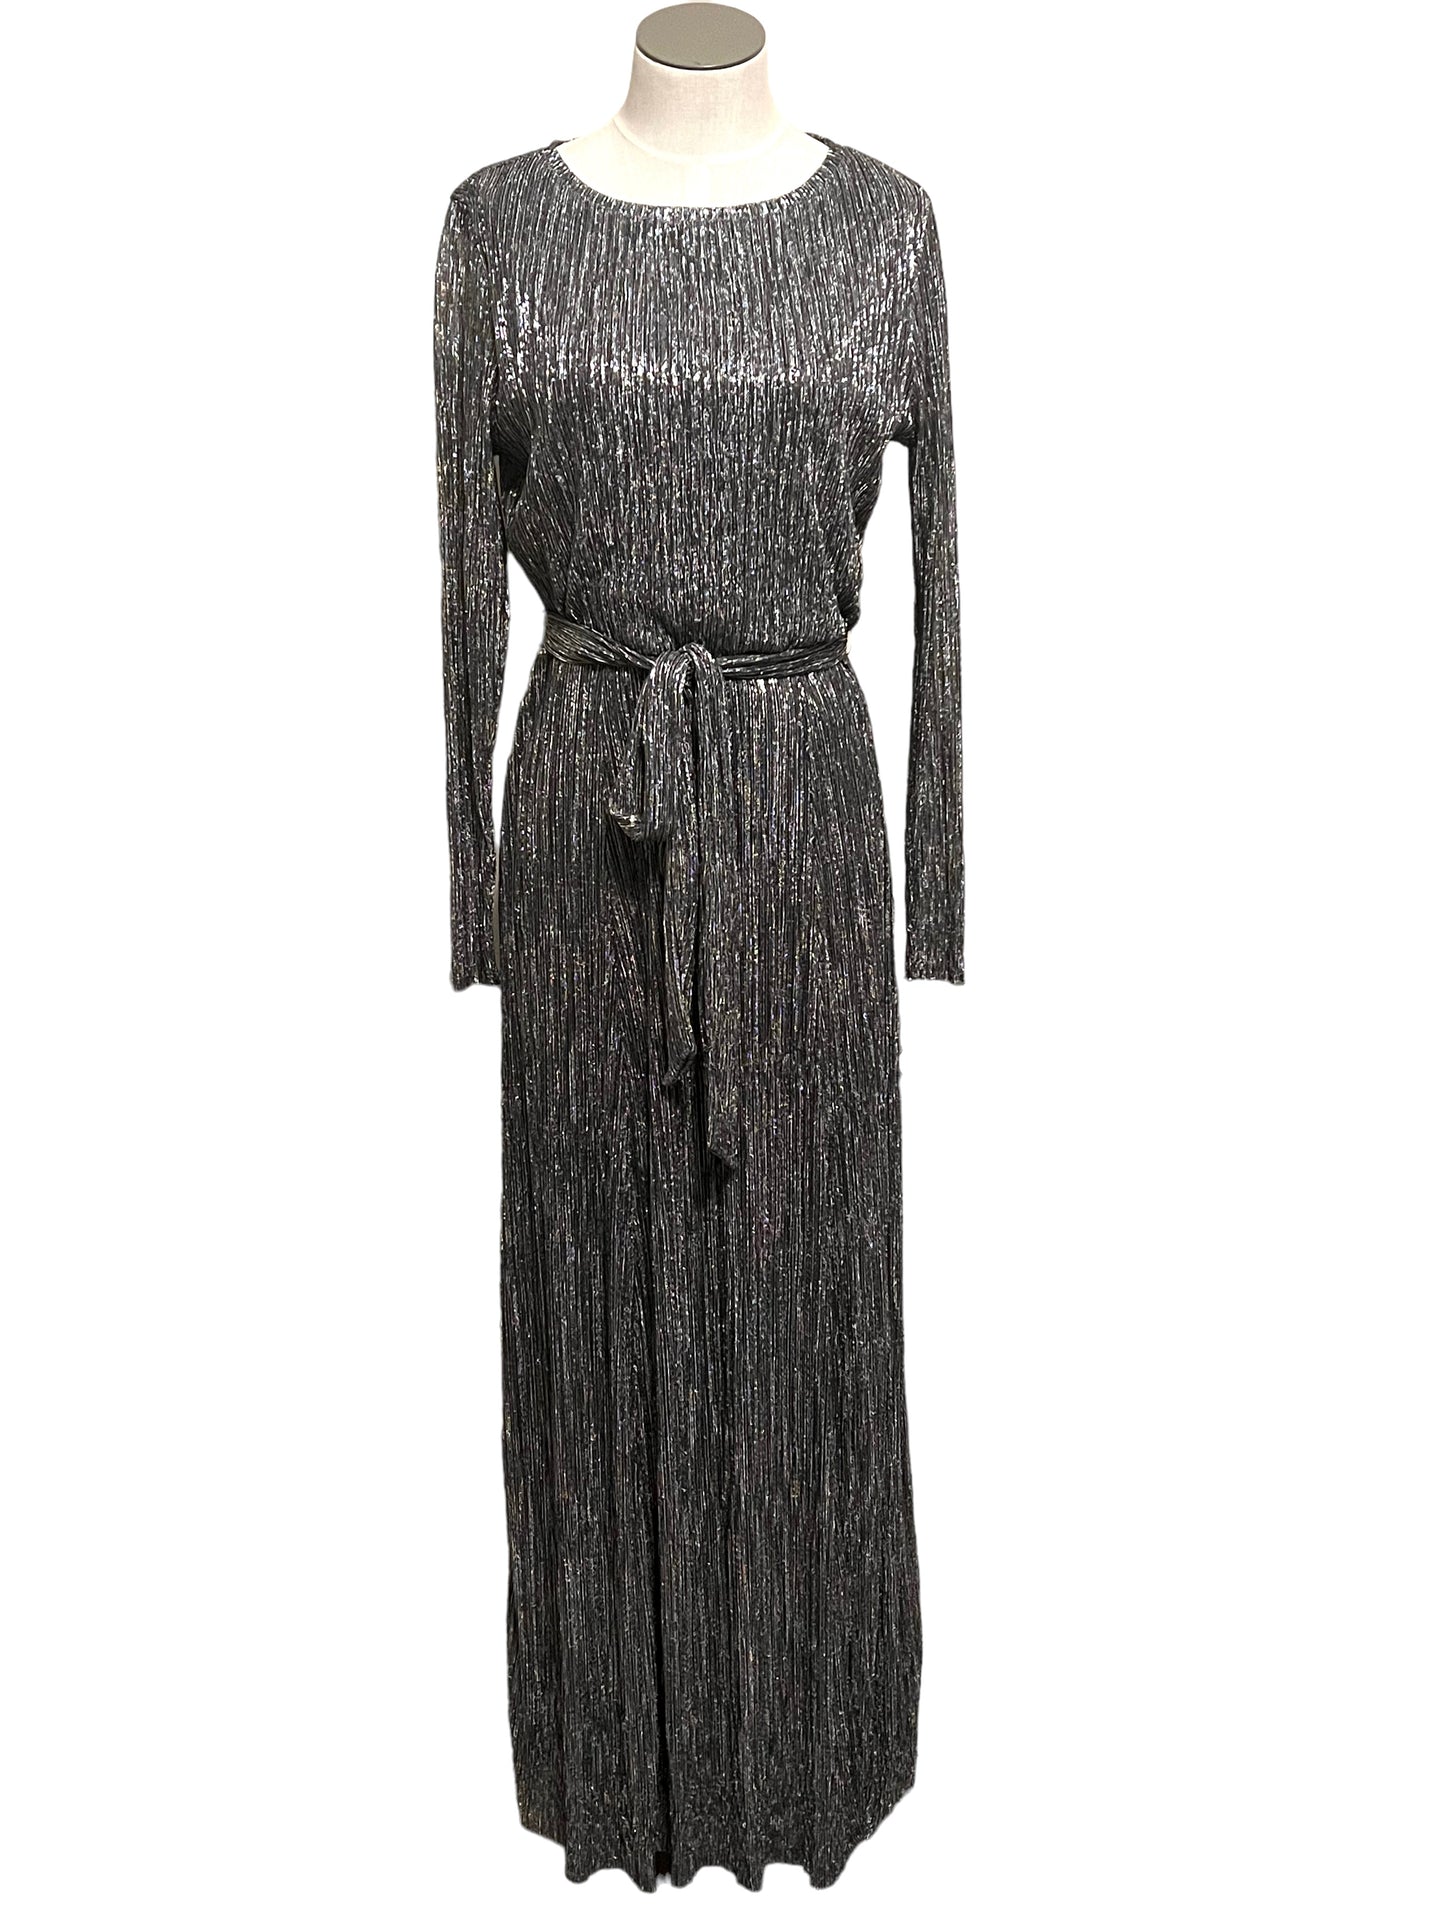 Anne Klein Size 6 Silver Metallic Gown